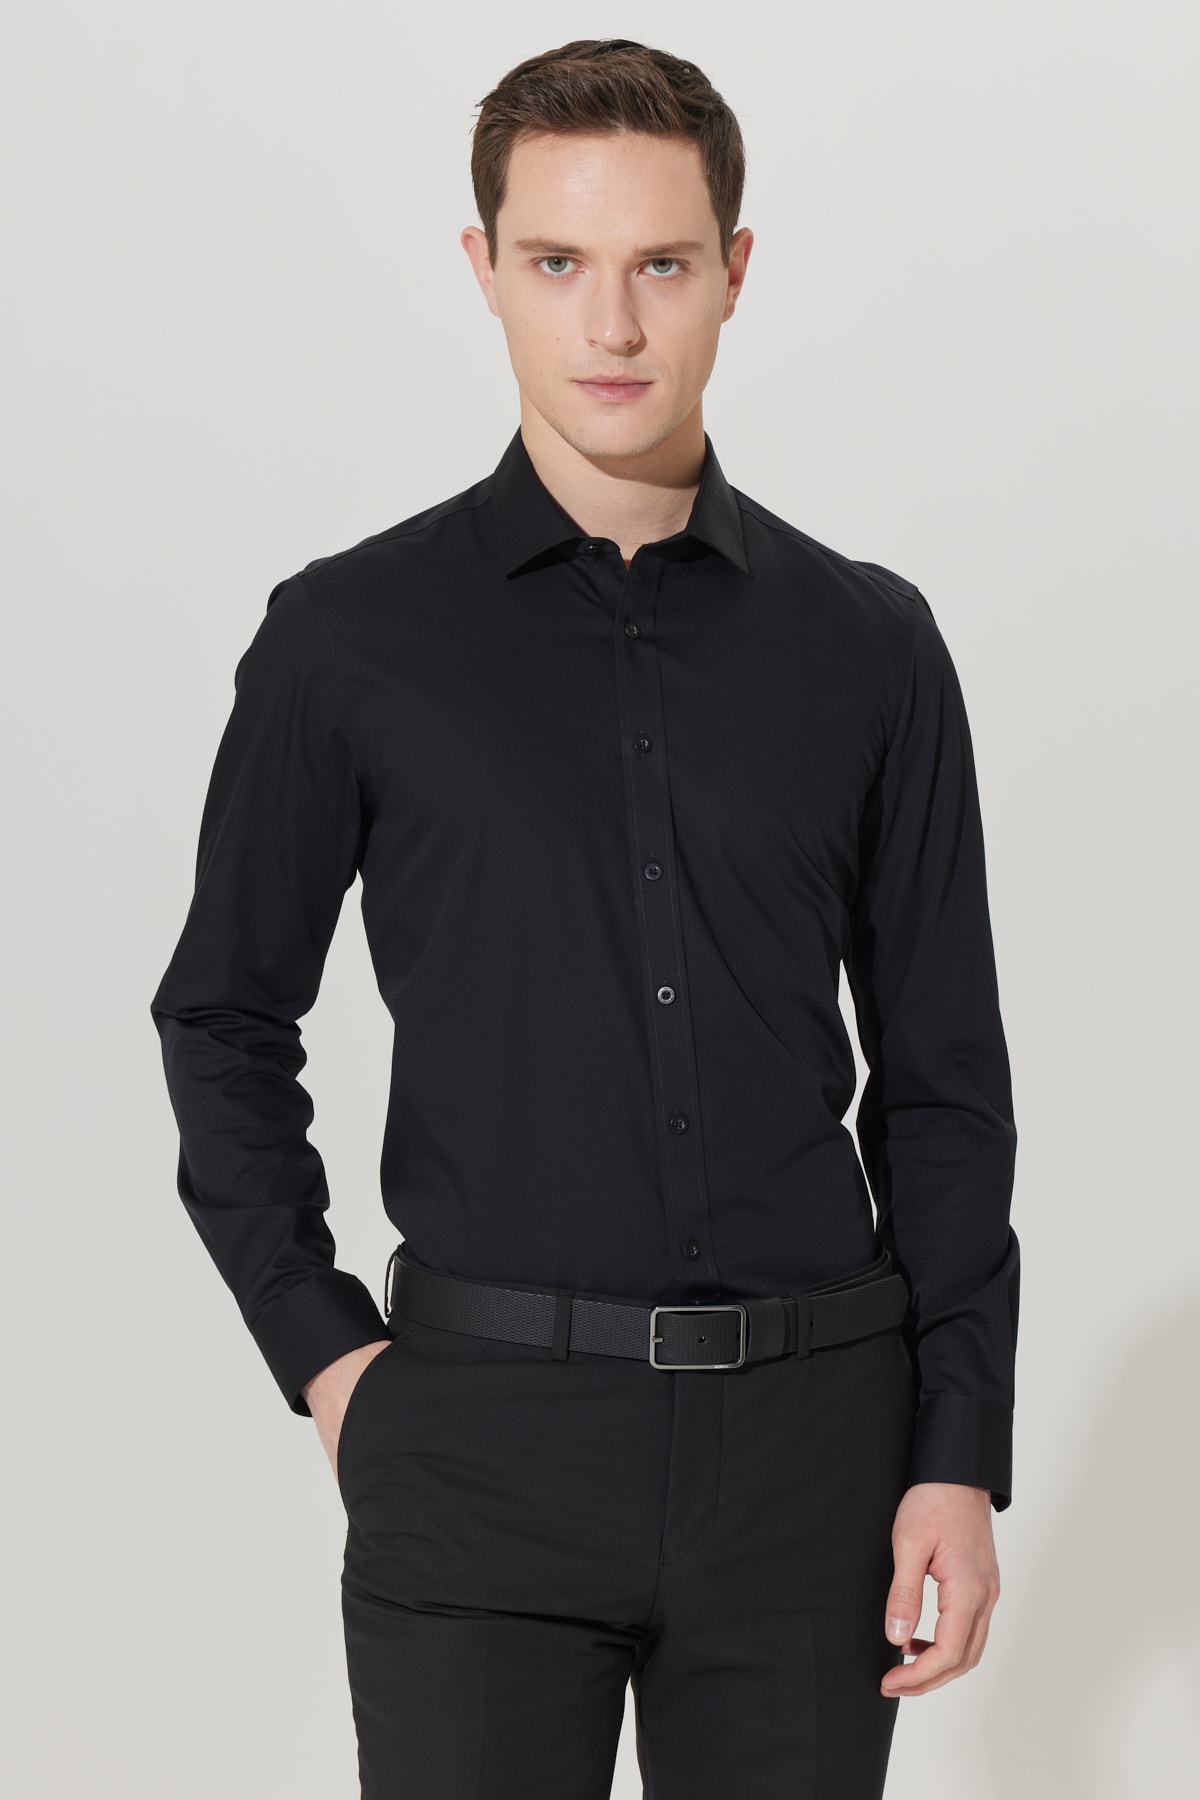 Levně ALTINYILDIZ CLASSICS Men's Black No-Iron Non-iron Slim Fit Slim Fit 100% Cotton Shirt.